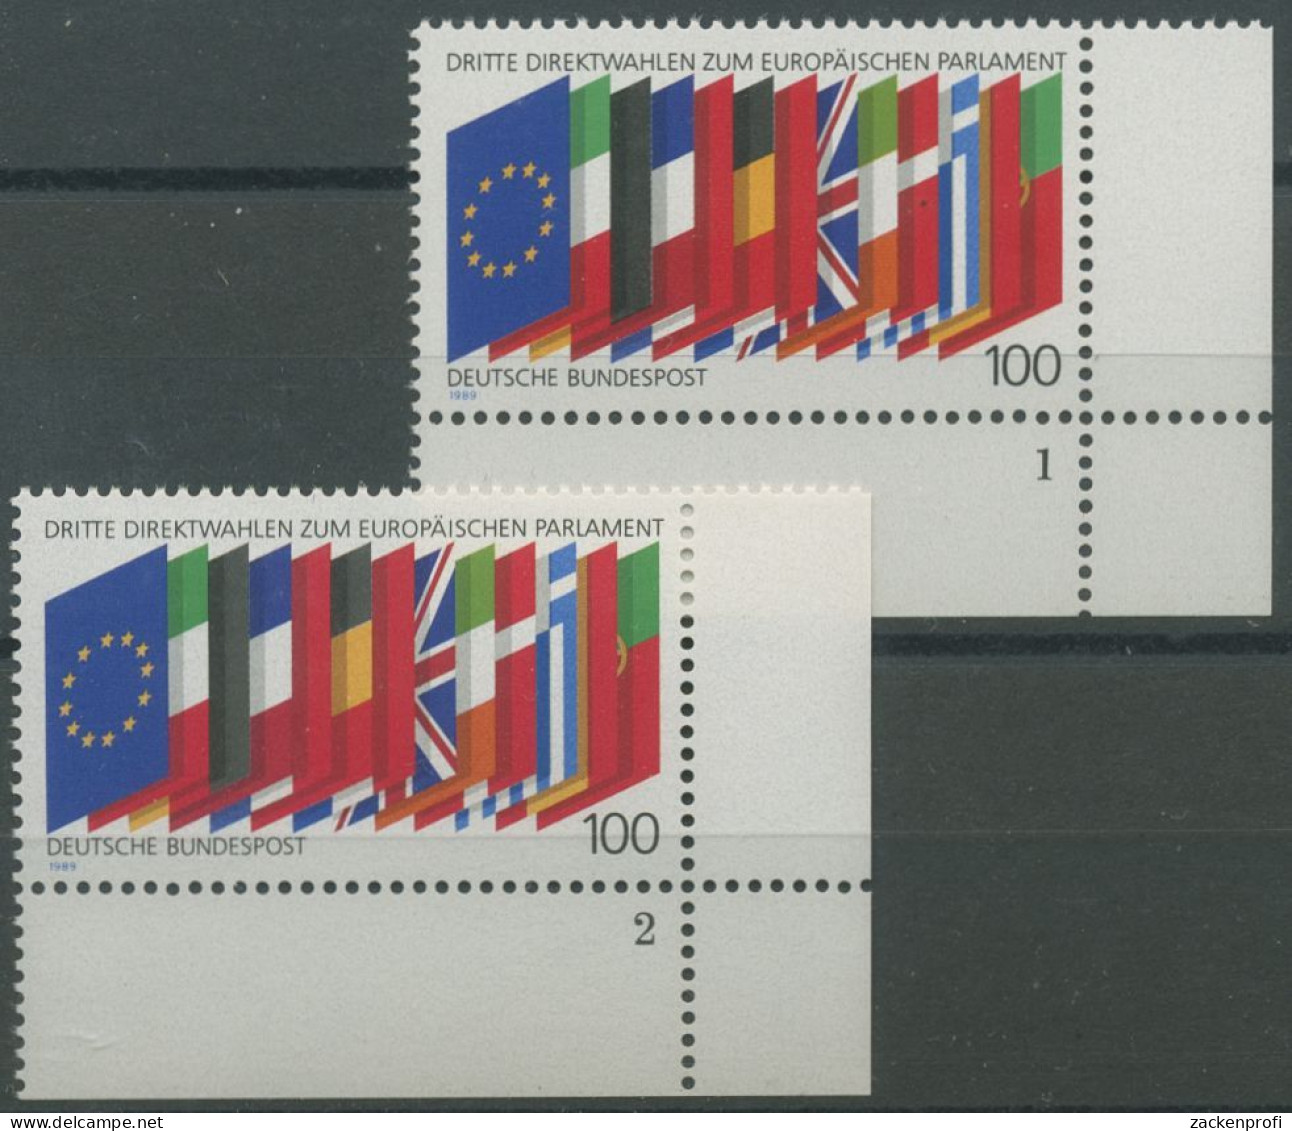 Bund 1989 Direktwahlen Zum Europ. Parlament 1416 Ecke 4 FN 1,2 Postfrisch (E657) - Ungebraucht